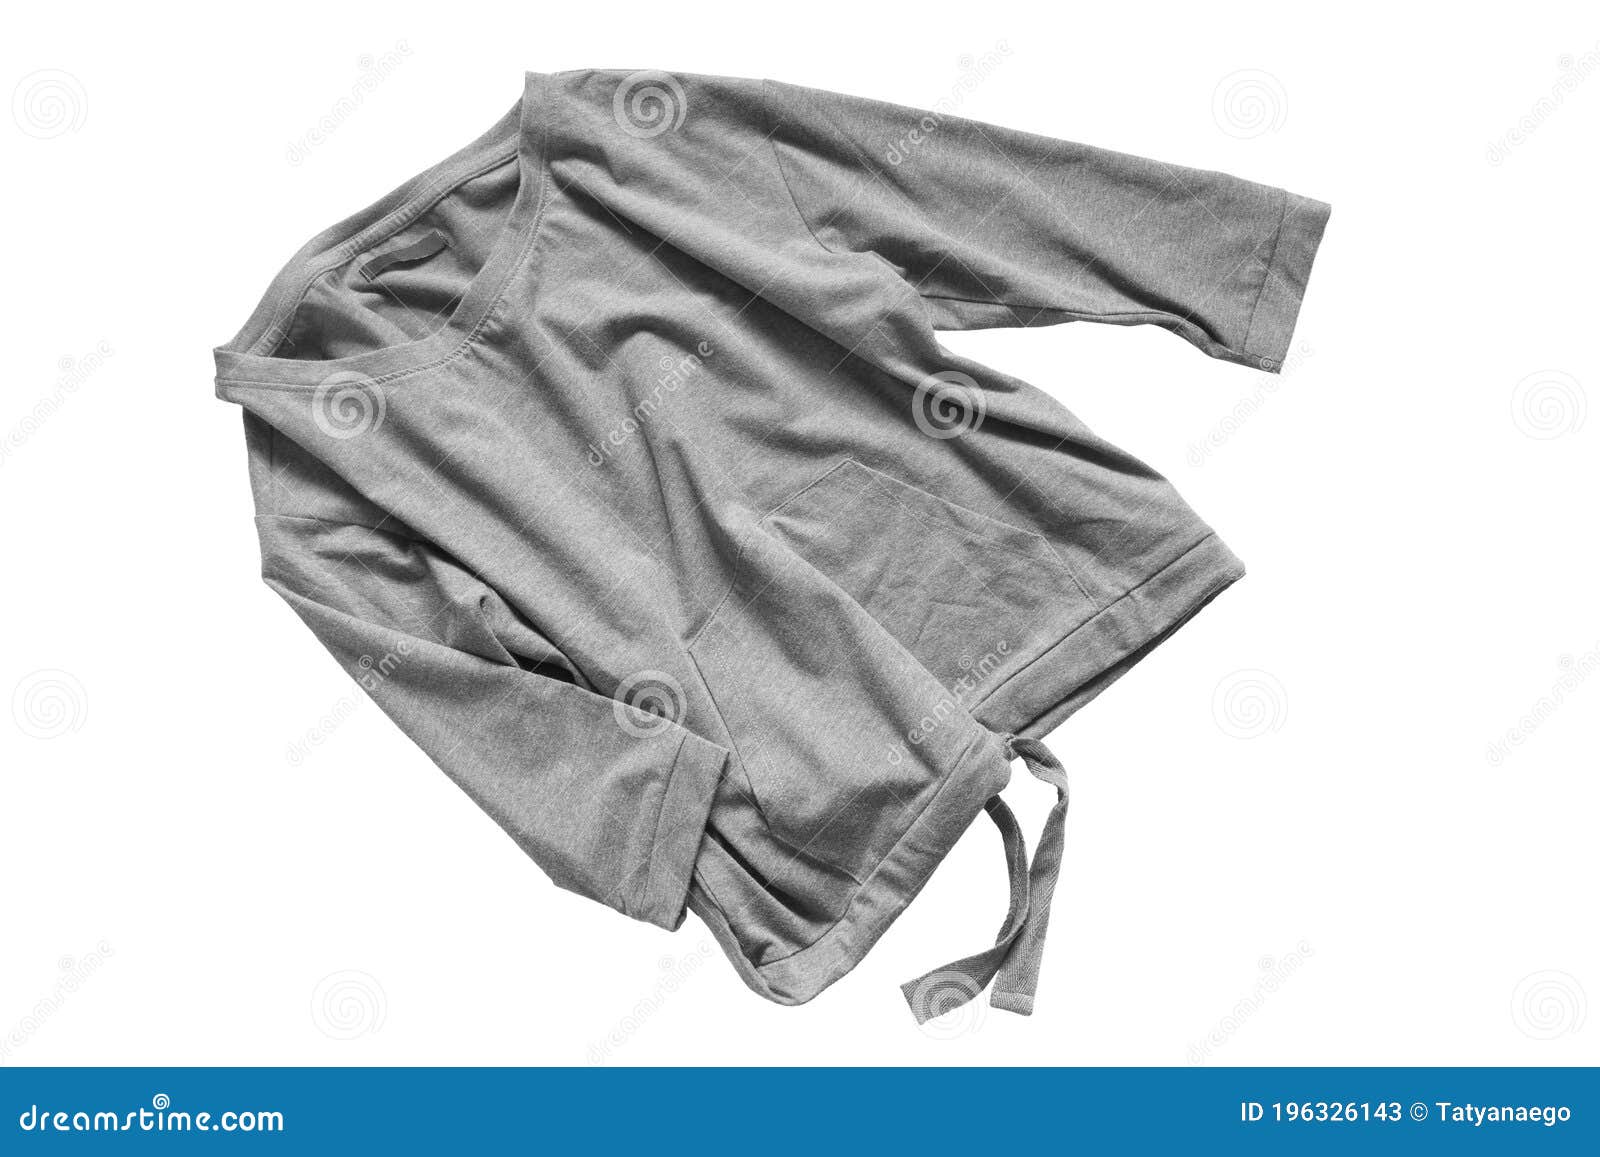 Crumpled Sweatshirt Isolated Stock Image - Image of grey, crumpled ...